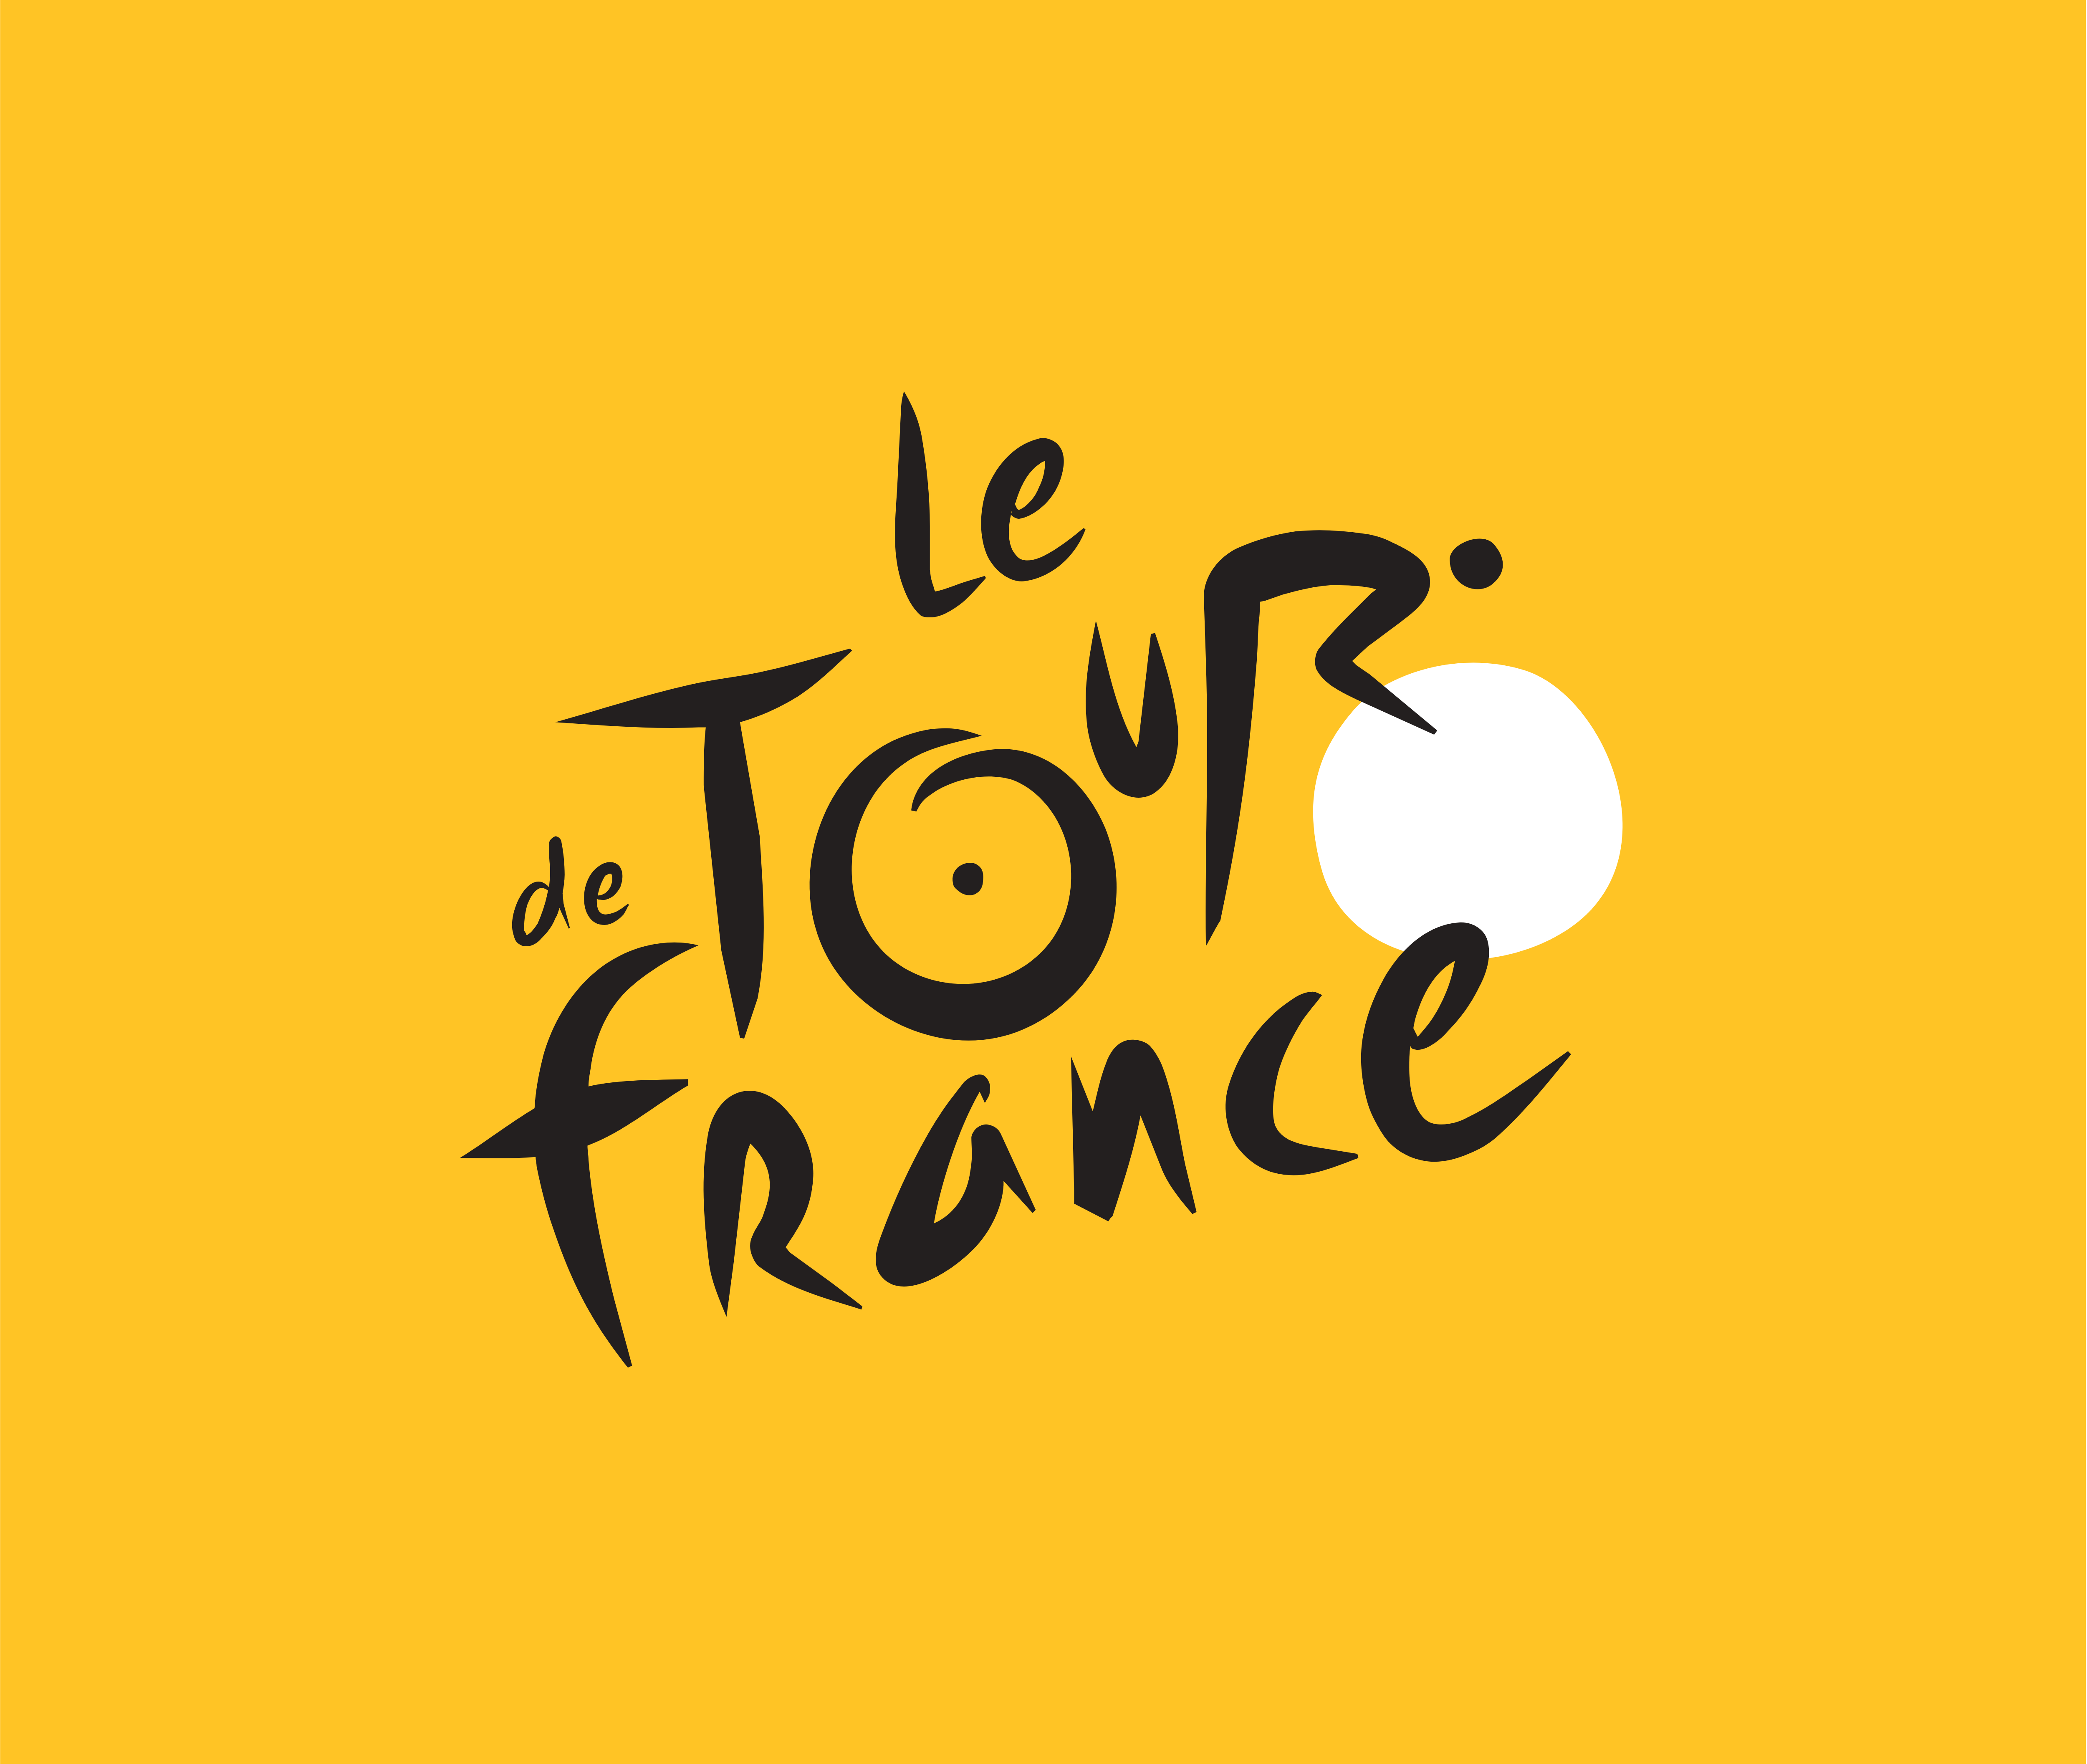 official tour de france logo